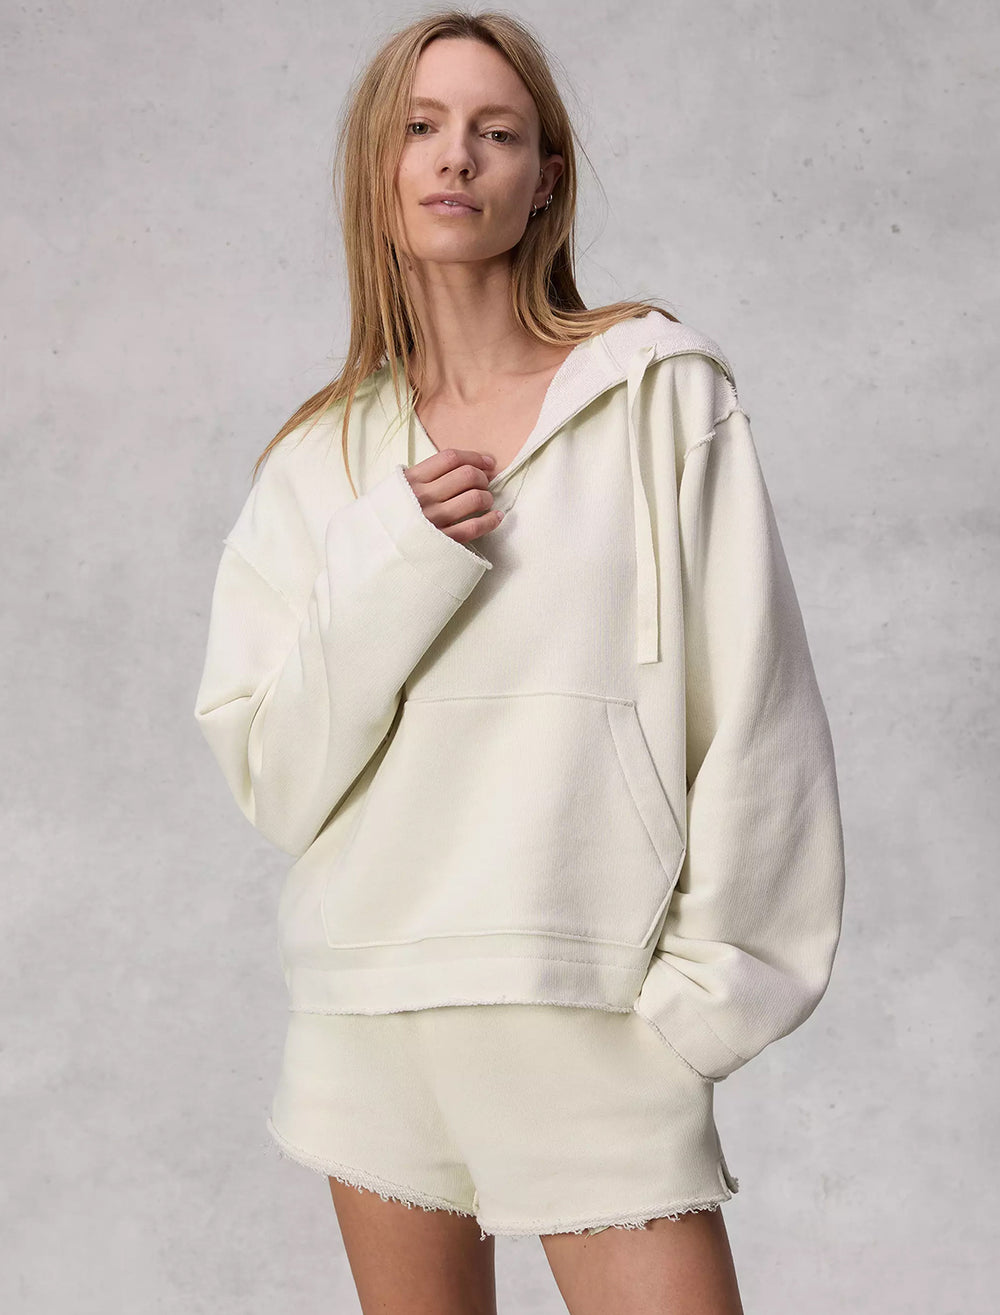 Model wearing Rag & Bone's baja hoodie in offwhite.